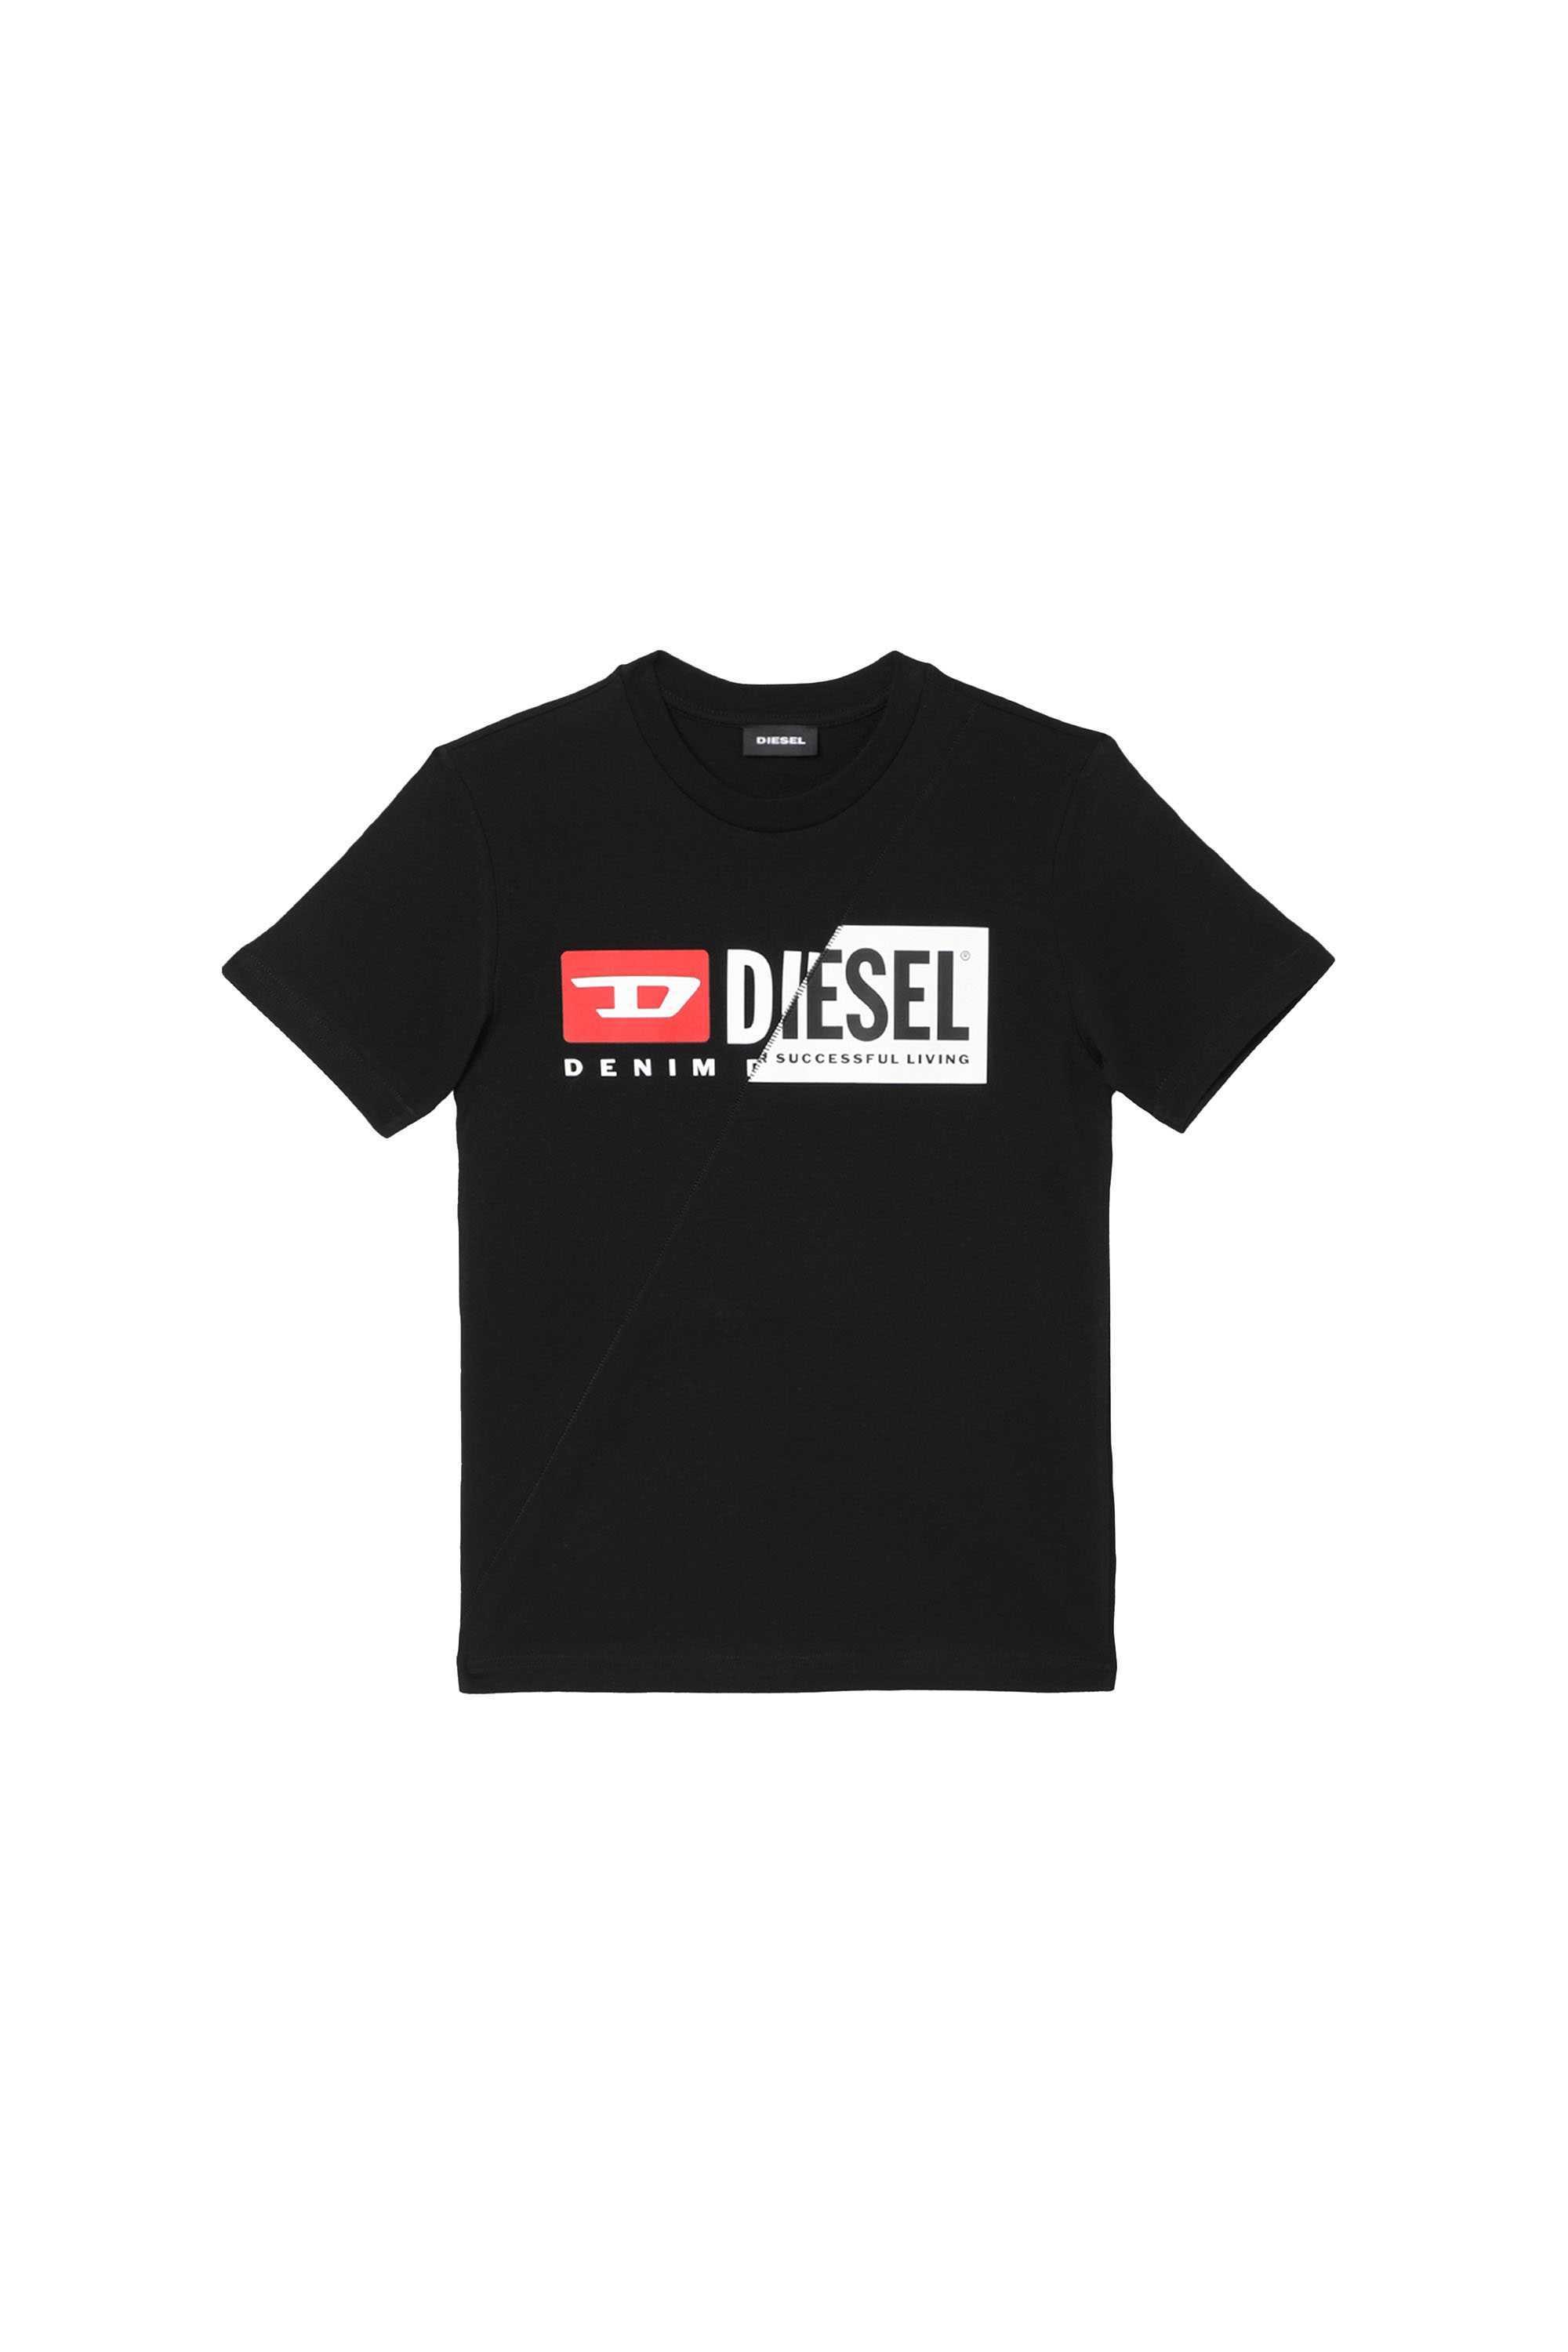 Diesel - TDIEGOCUTY, Black - Image 1